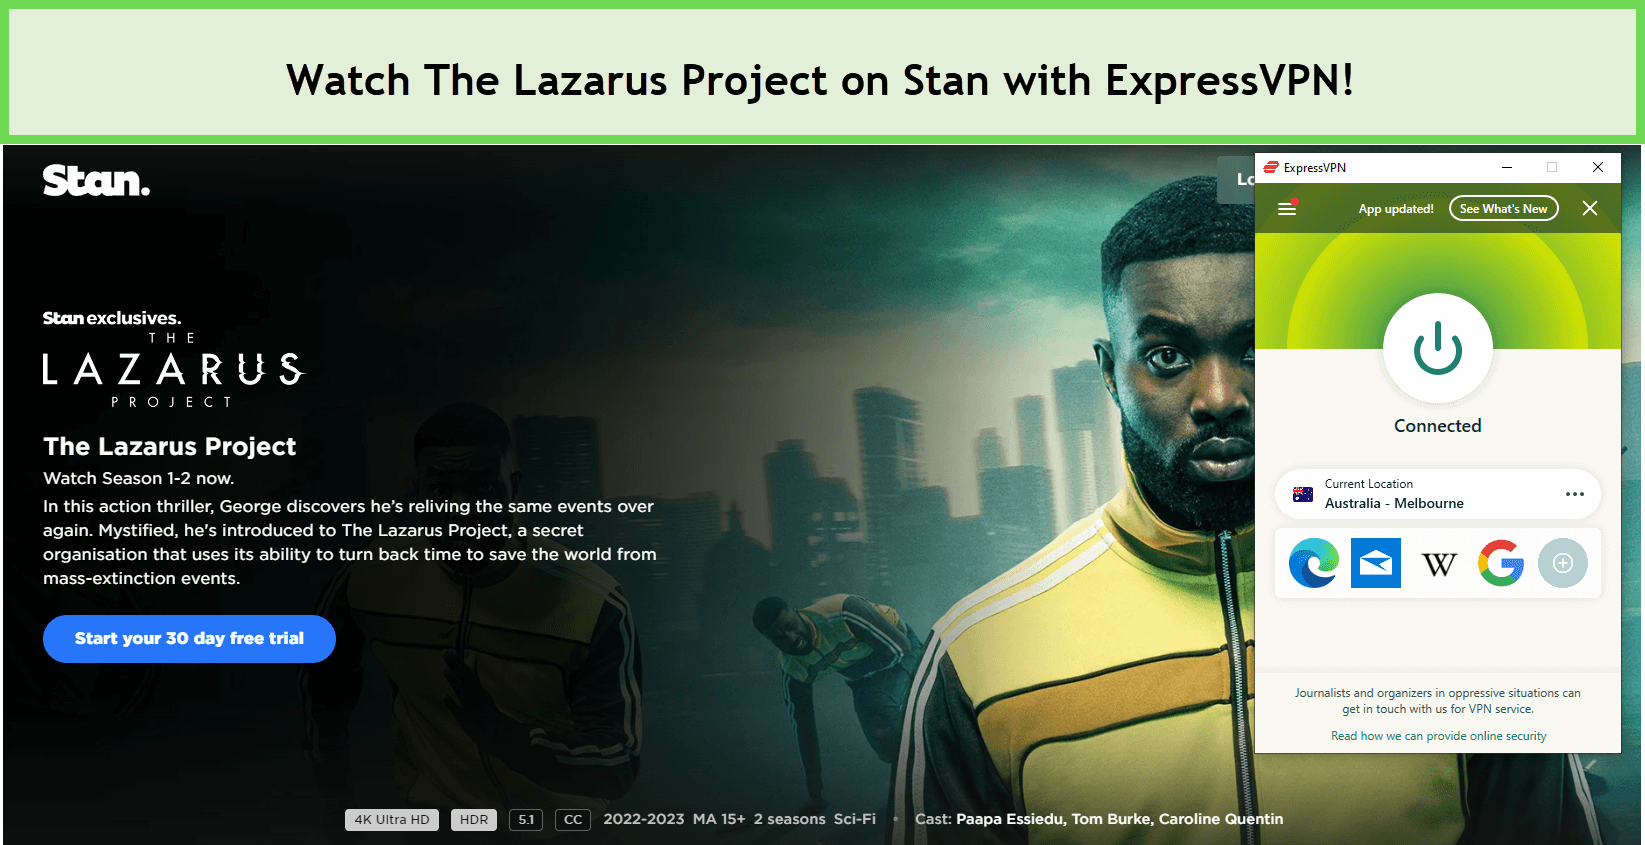 Watch-The-Lazarus-Project-Watch-The-Lazarus-Project-on-Stan-with-ExpressVPN-on-Stan-with-ExpressVPN